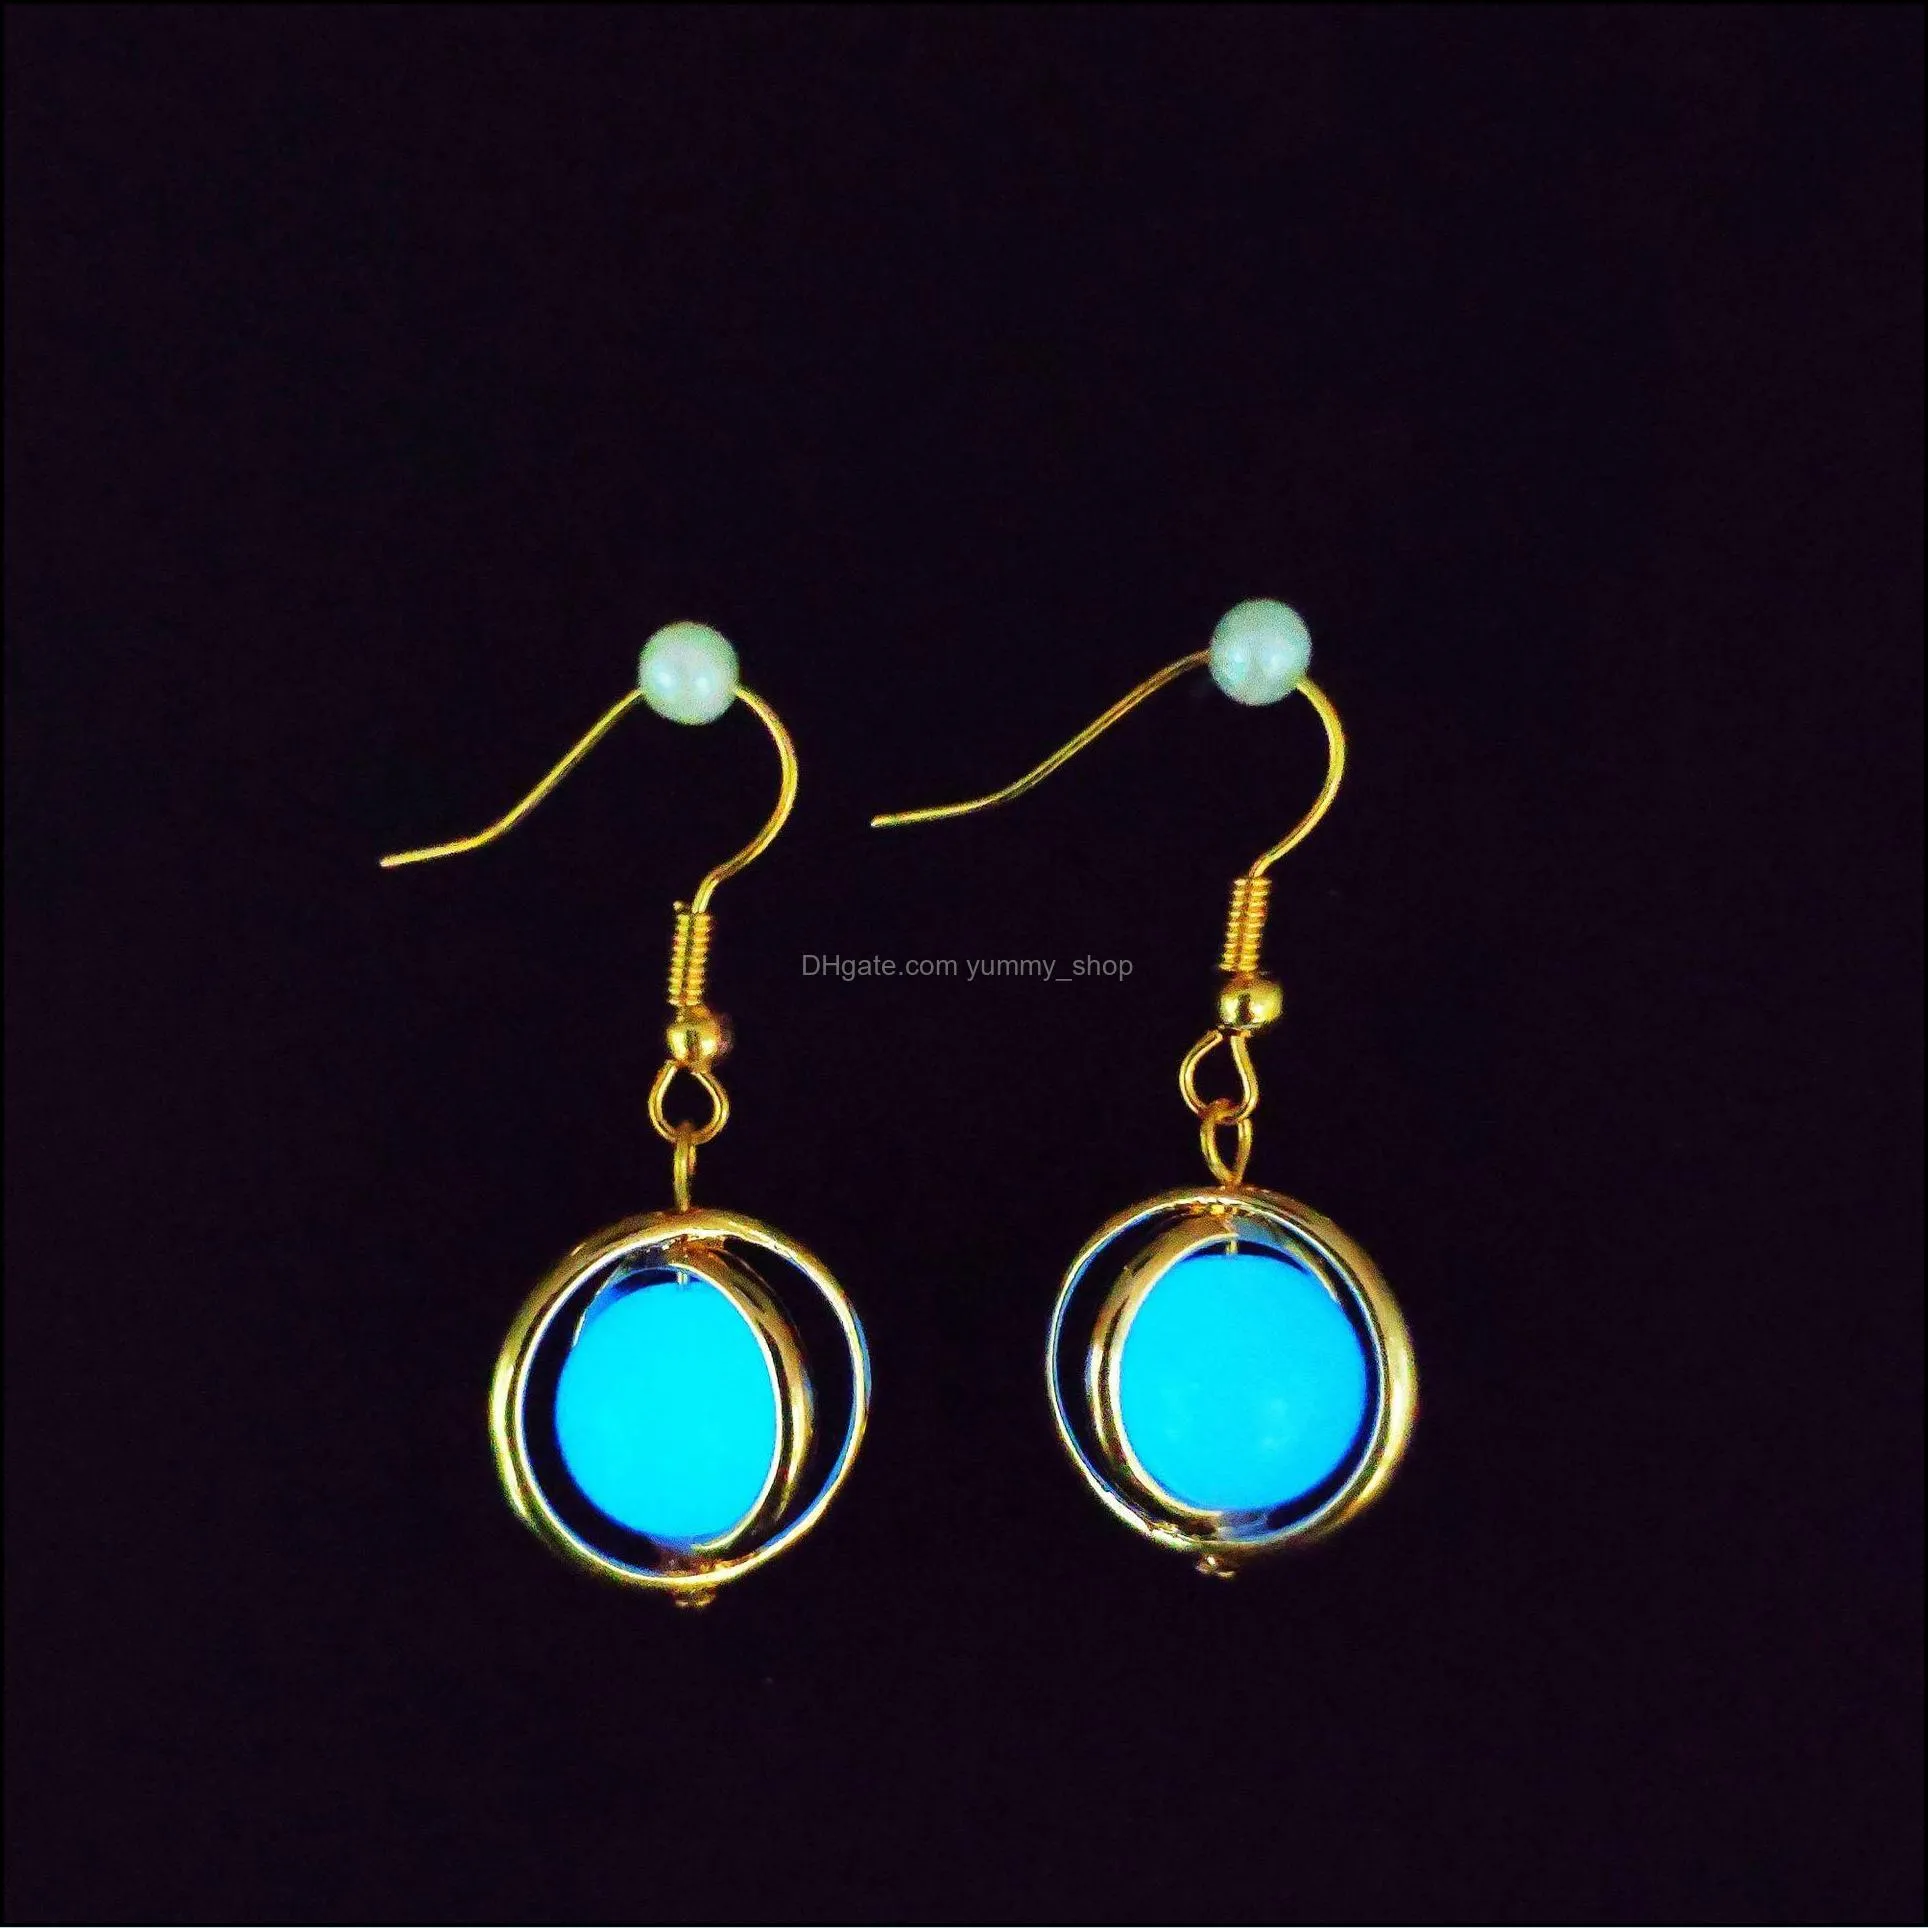 luminous pendant dangle earring classic stars moon key shape glow in the dark earrings women fluorescence jewelry